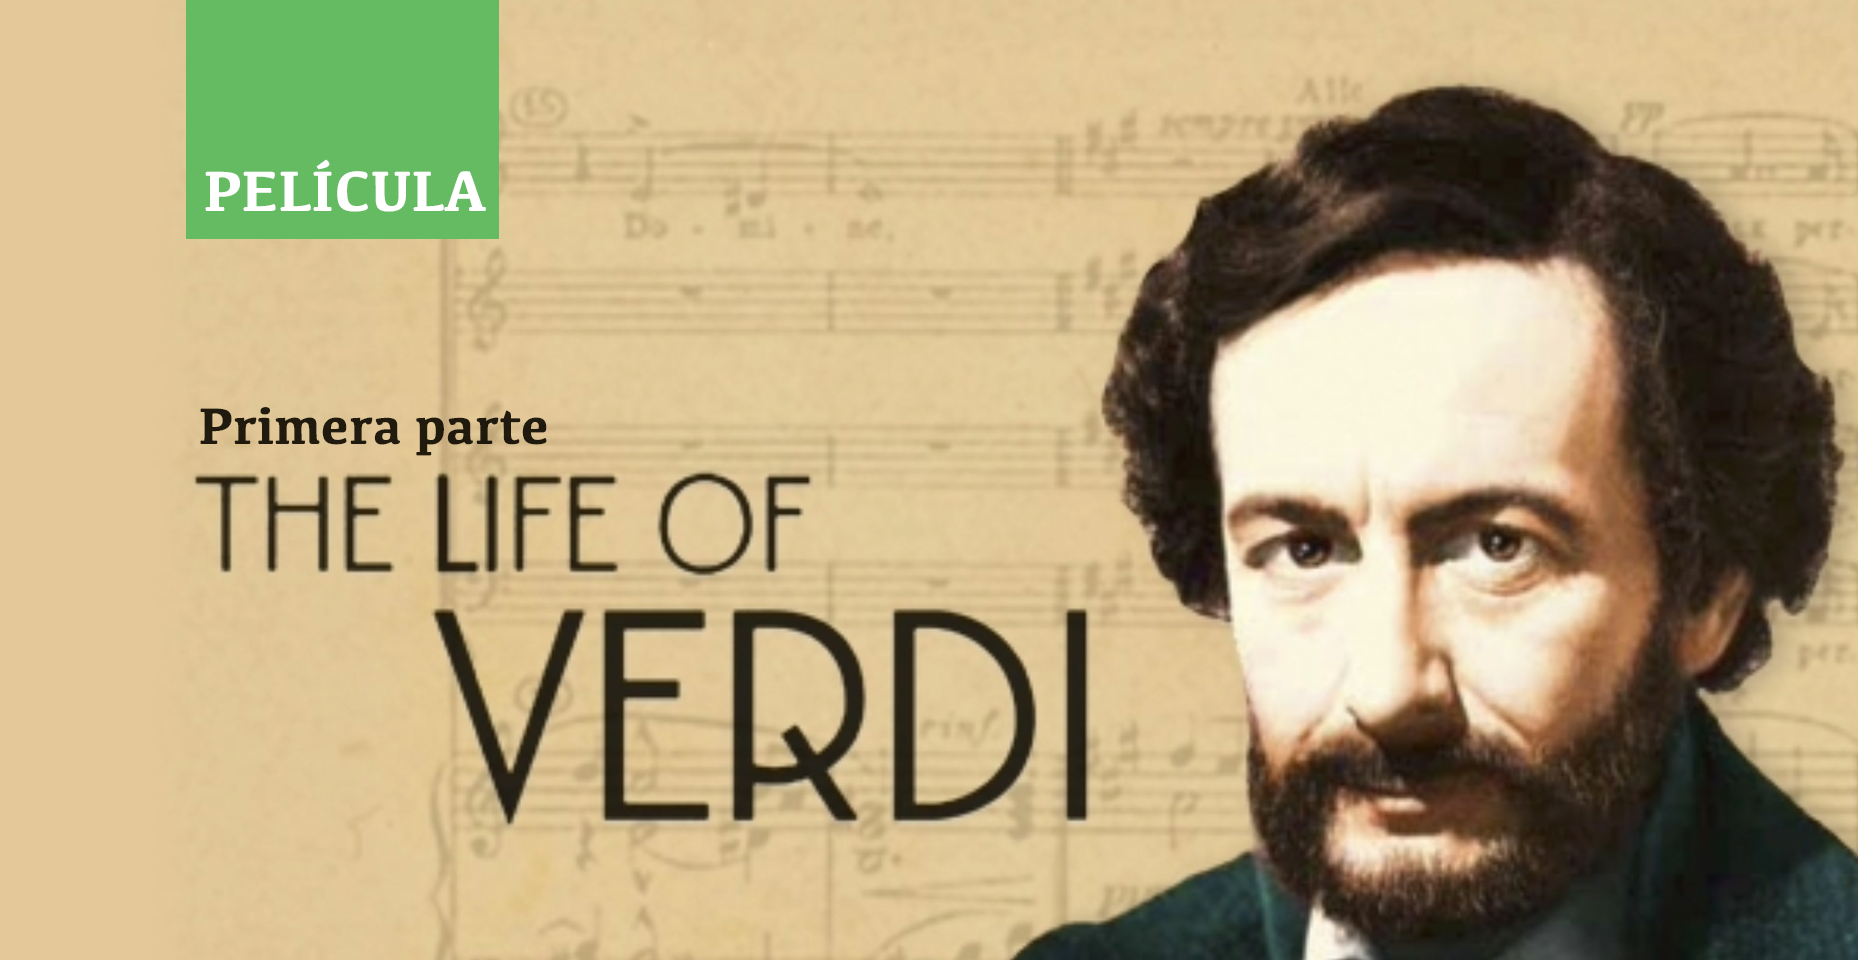 La vida de Verdi